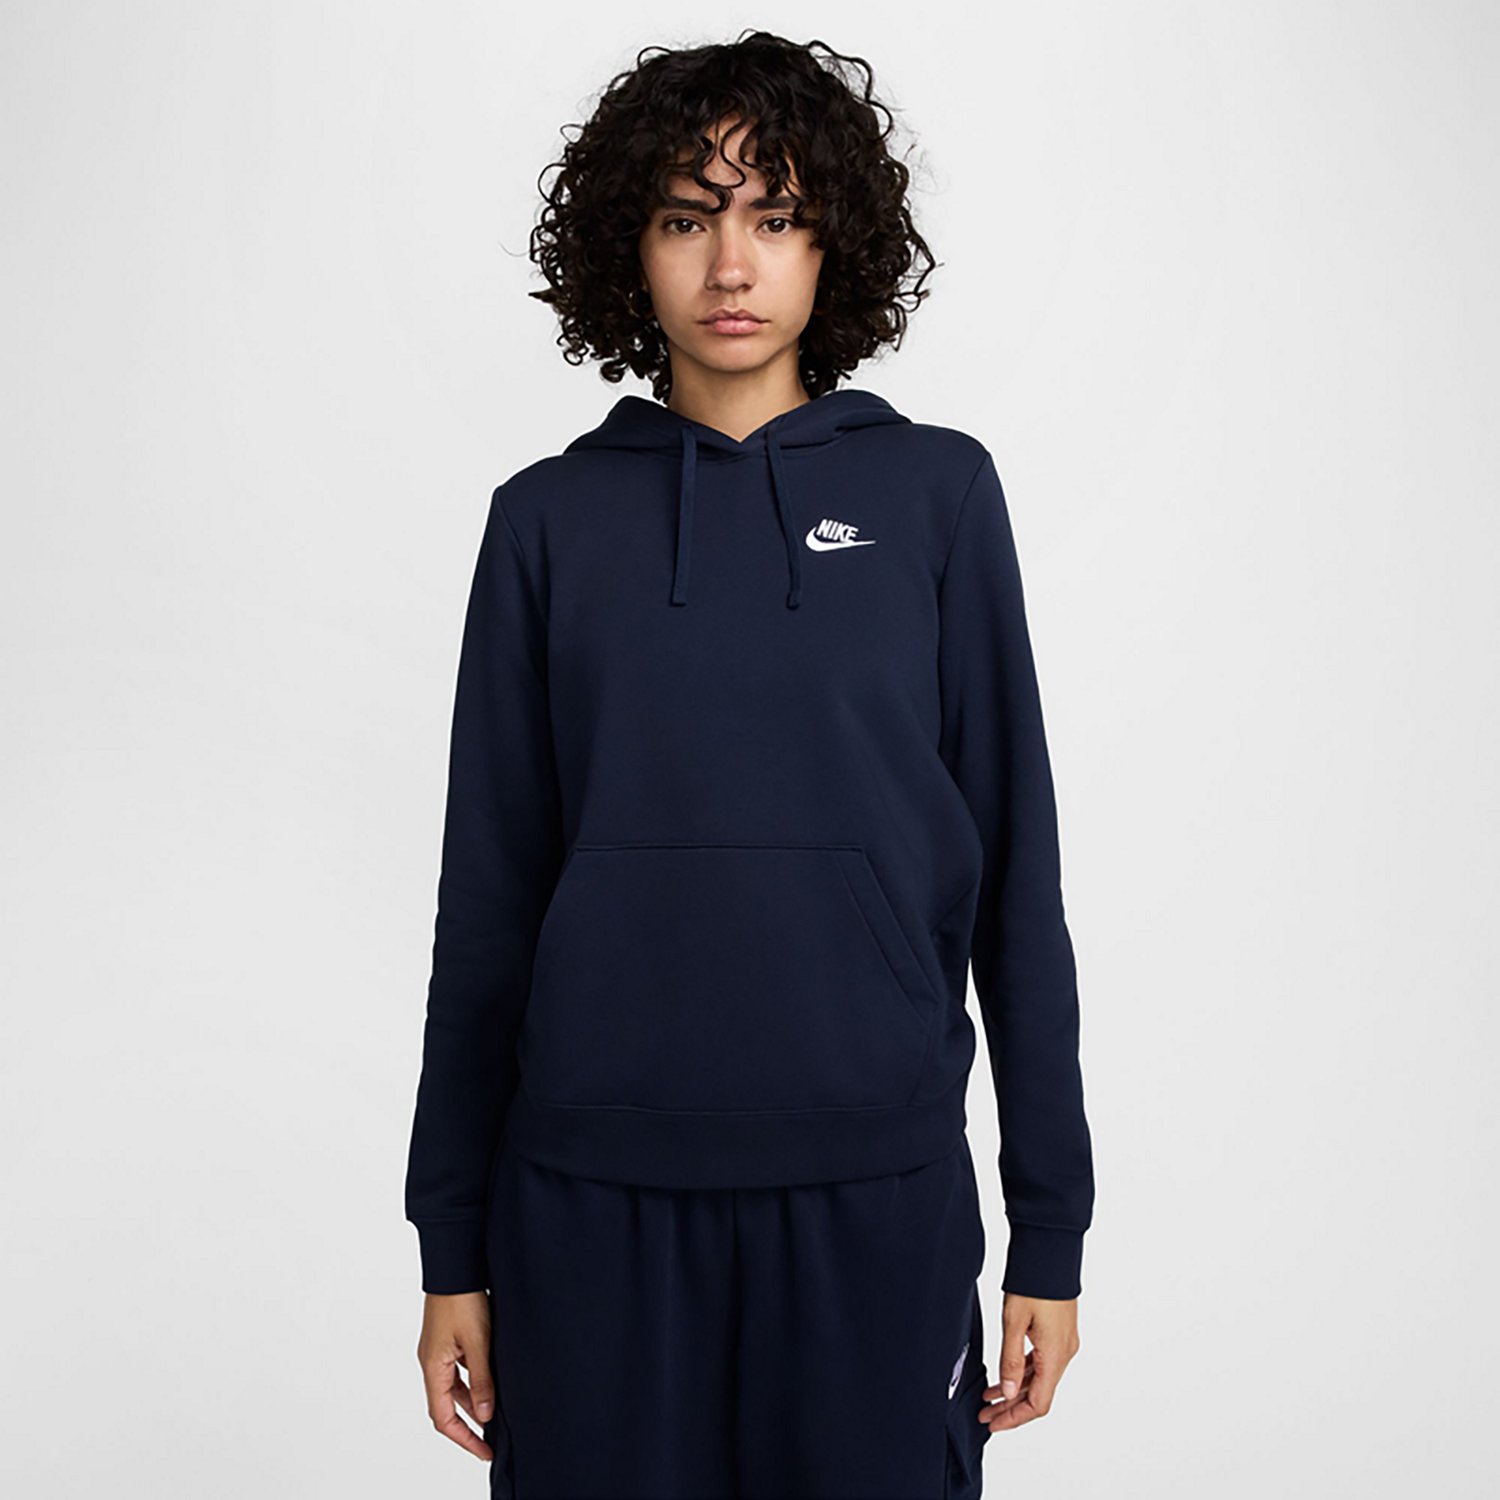 Nike Women's Club Fleece Pullover Hoodie                                                                                         - view number 1 selected